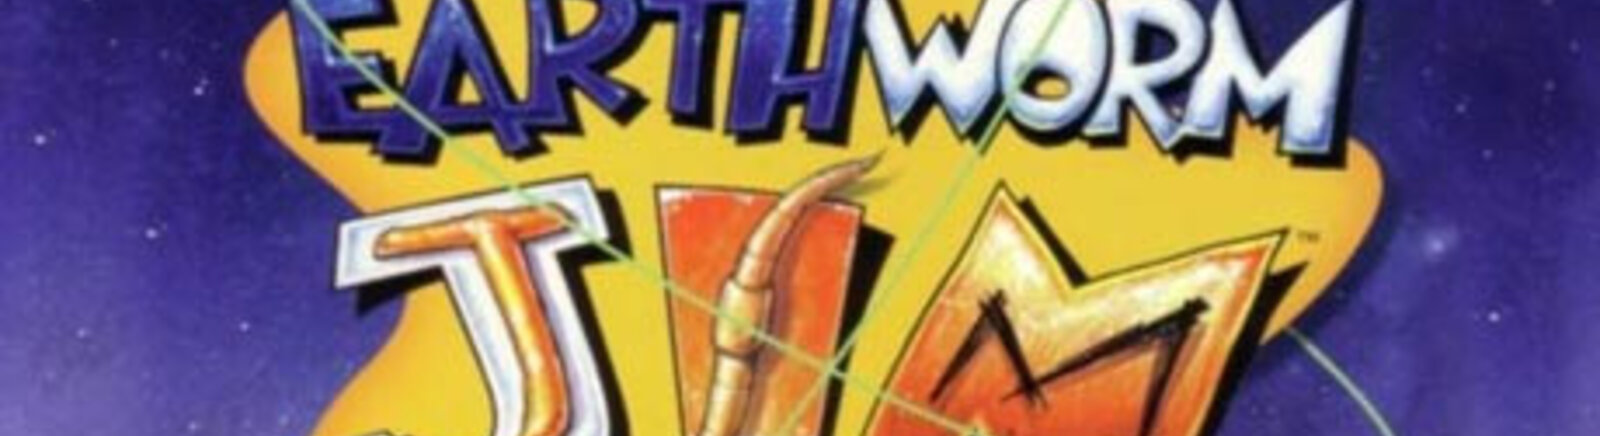 Дата выхода Earthworm Jim (EWJ)  на Wii, SNES и Game Boy Advance в России и во всем мире